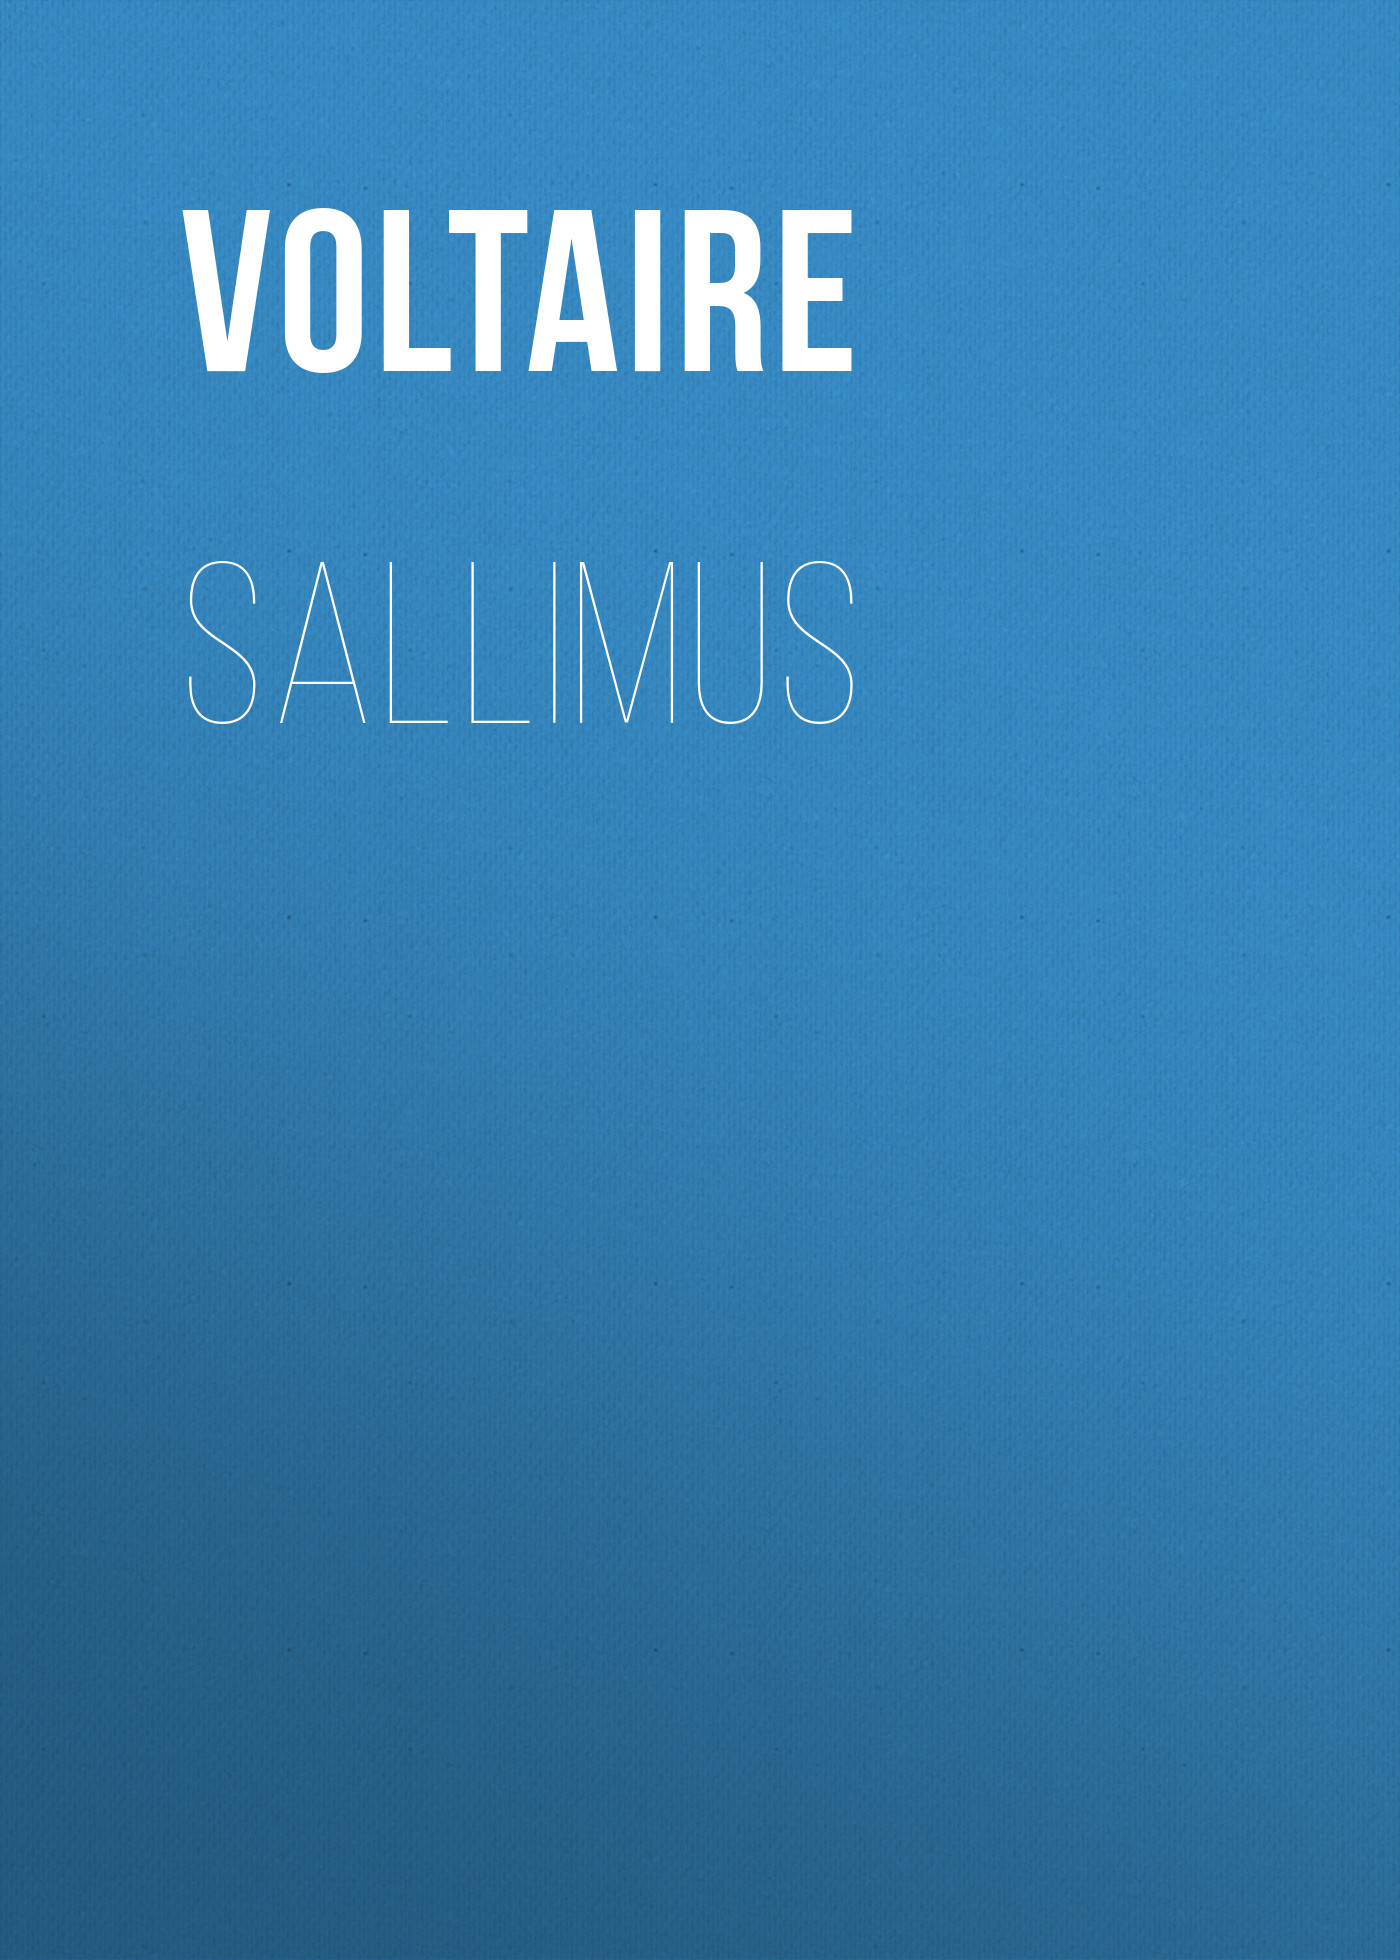 Книга Sallimus из серии , созданная  Voltaire, может относится к жанру Литература 18 века, Зарубежная классика. Стоимость электронной книги Sallimus с идентификатором 25561252 составляет 0 руб.